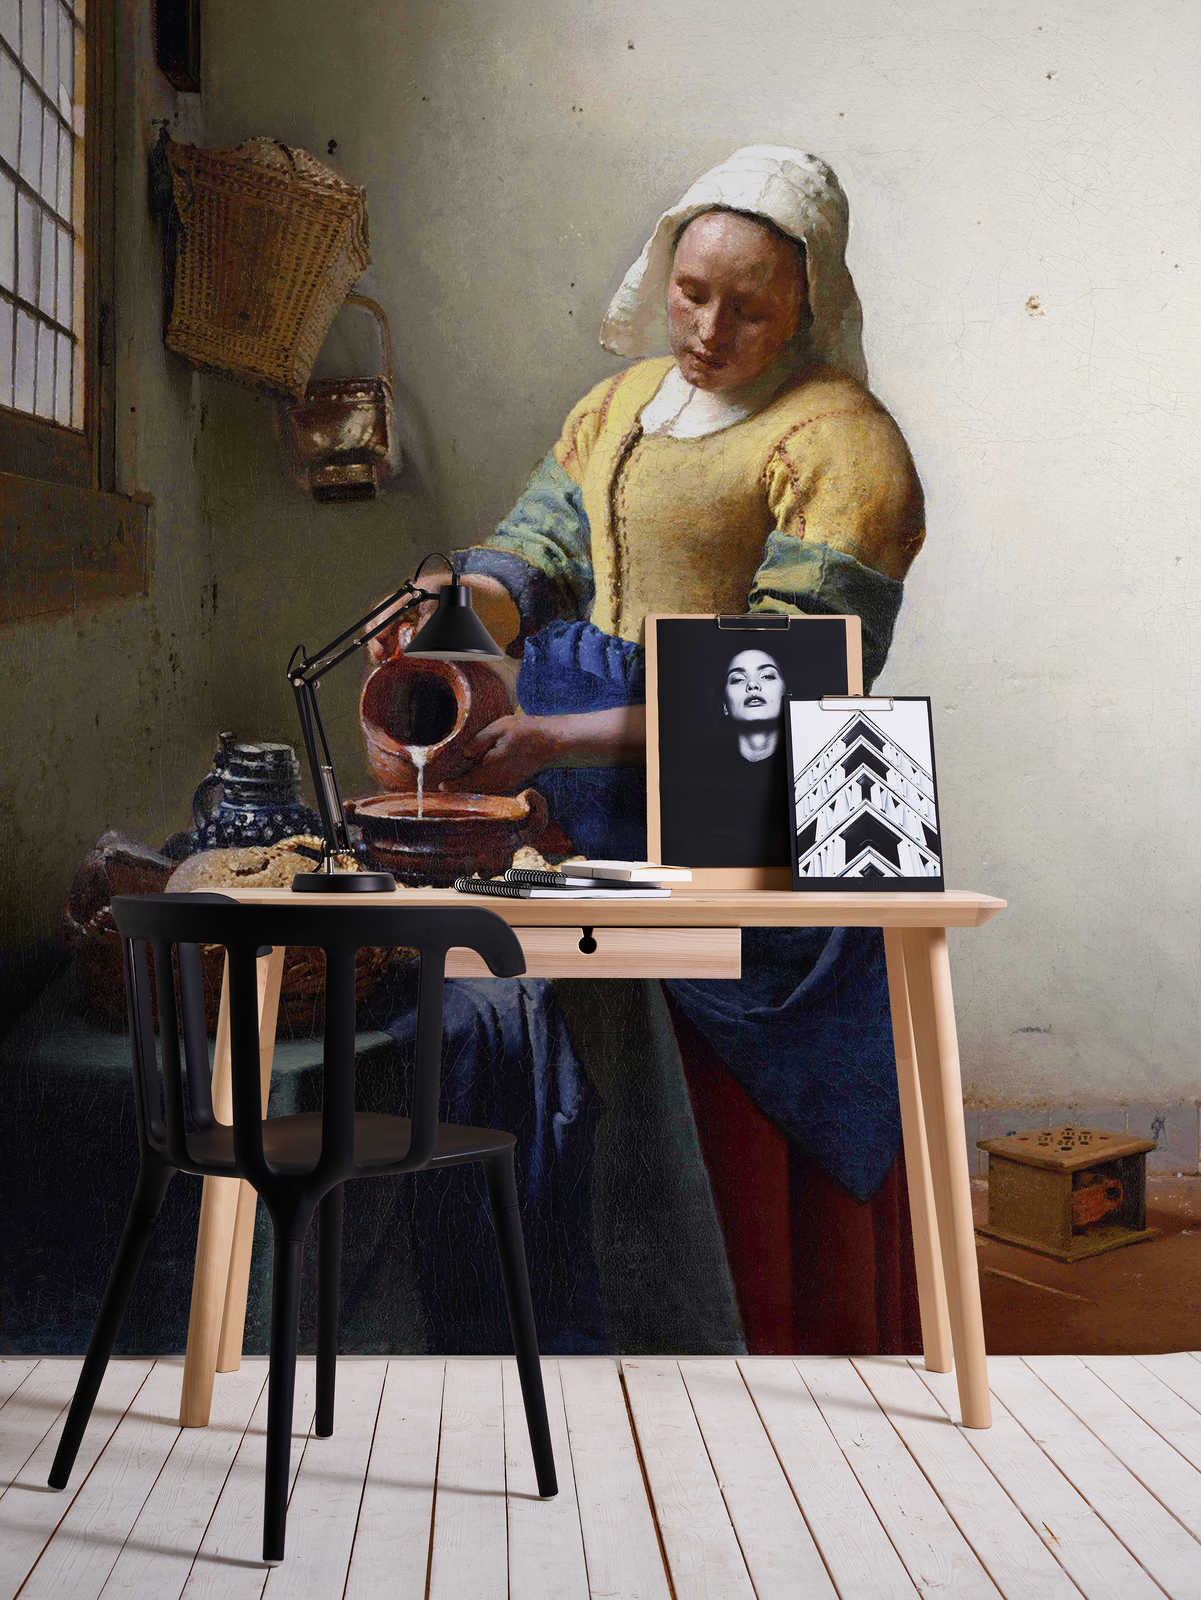             Papier peint panoramique "Servante au pot de lait" de Jan Vermeer
        